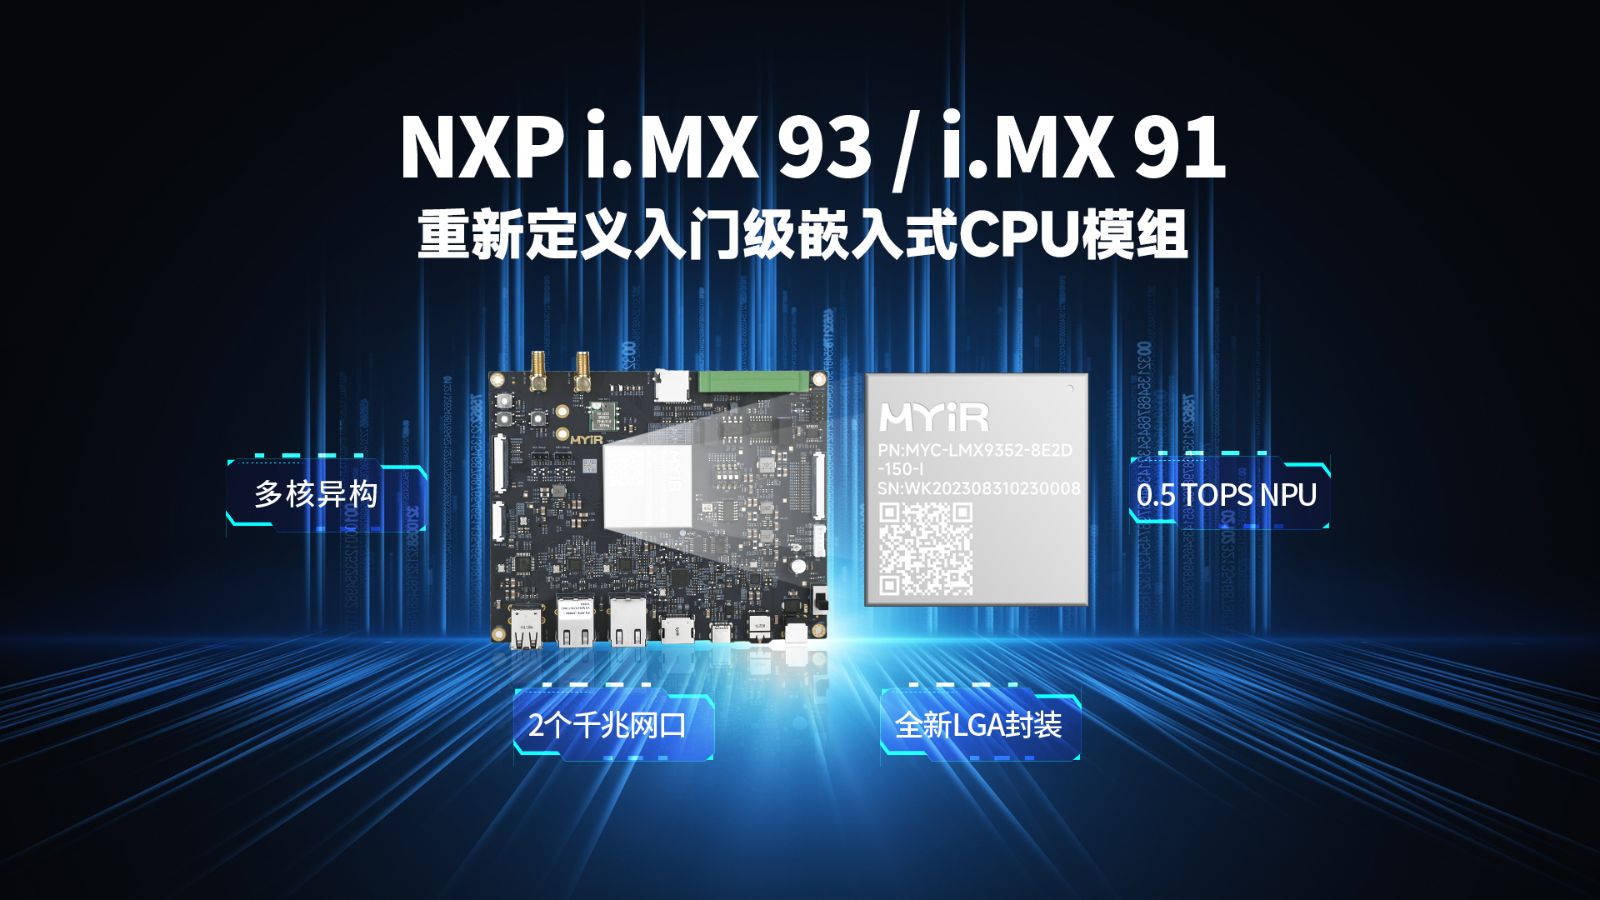 米尔基于NXP i.MX 93/i.MX 91的核心板和开发板